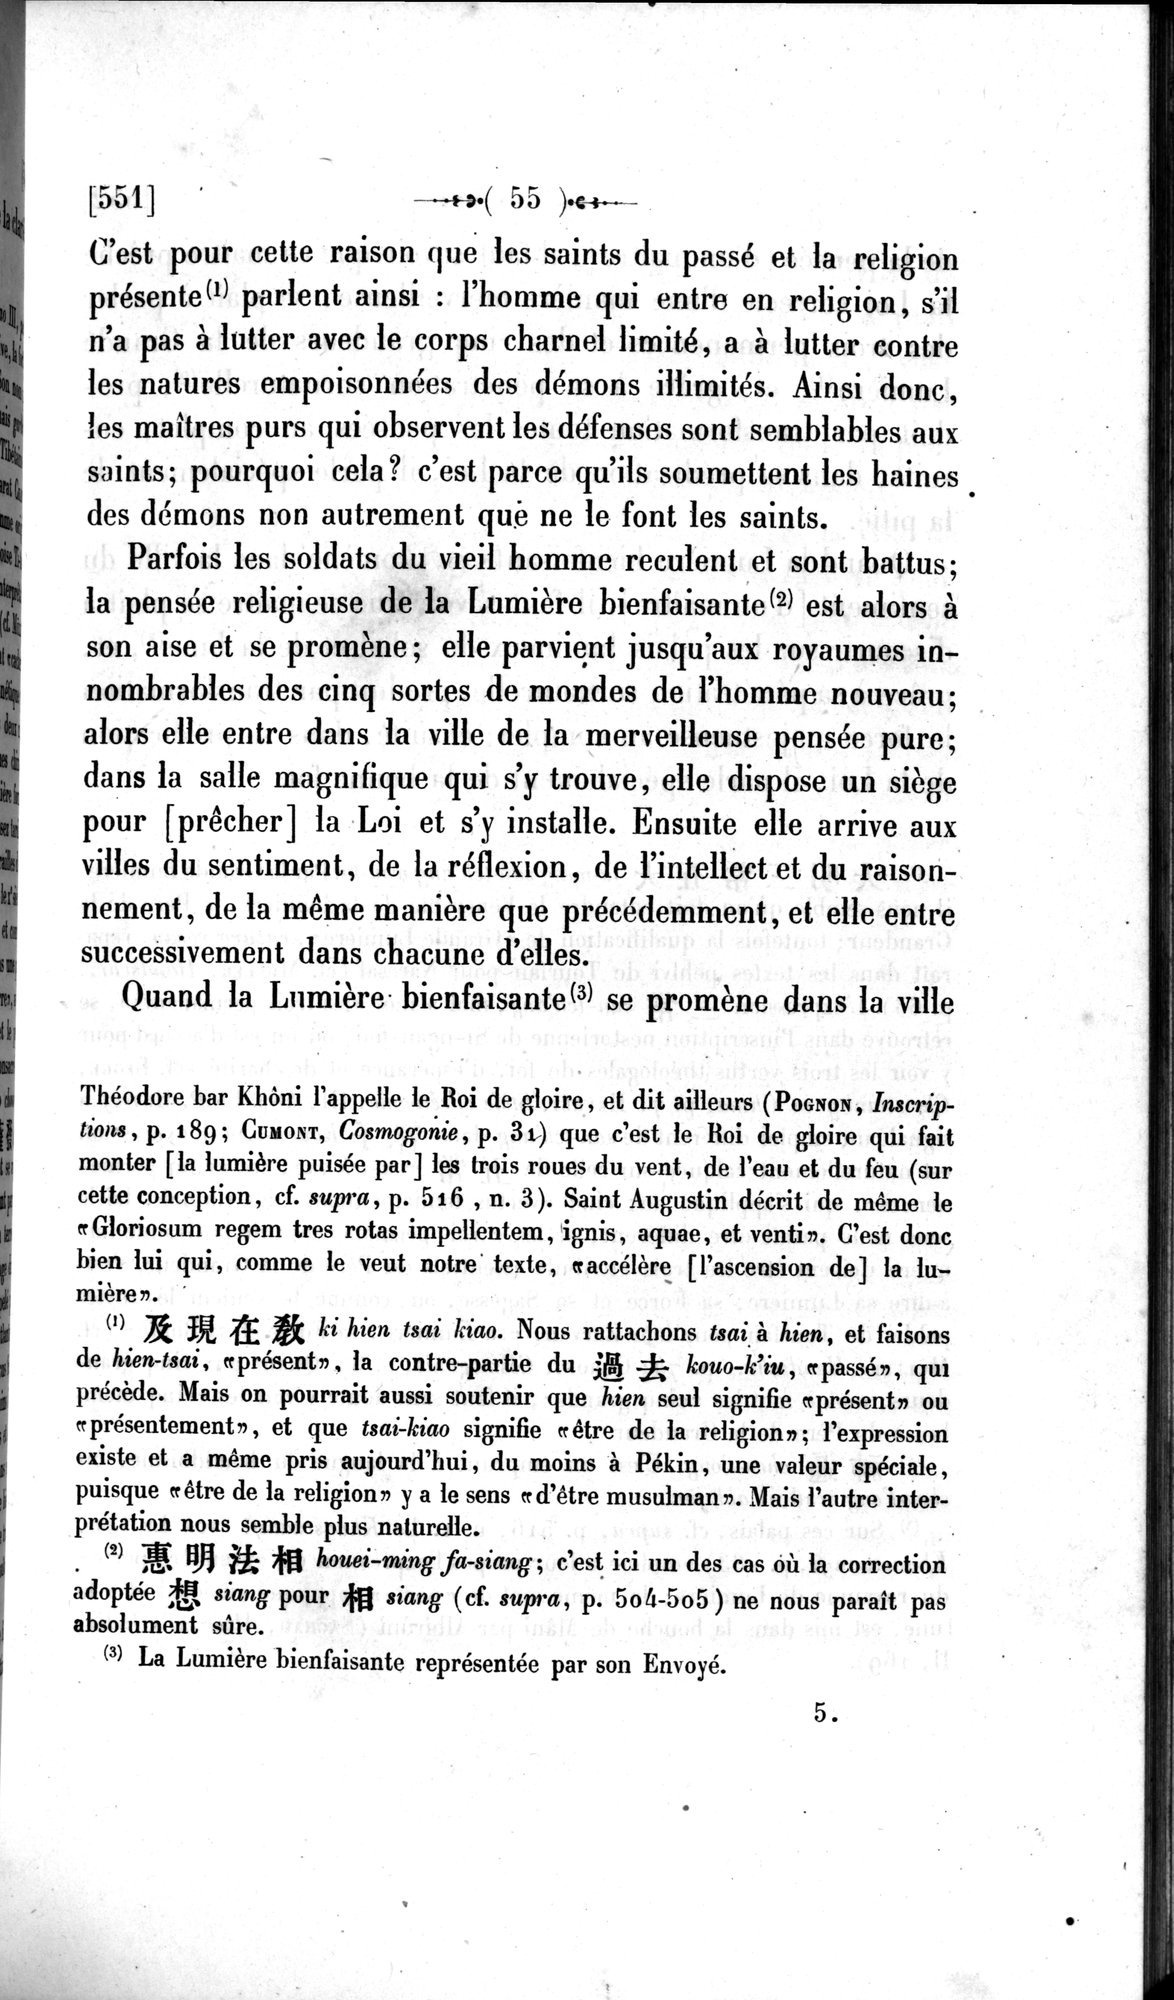 Un traité manichéen retrouvé en Chine : vol.1 / Page 65 (Grayscale High Resolution Image)